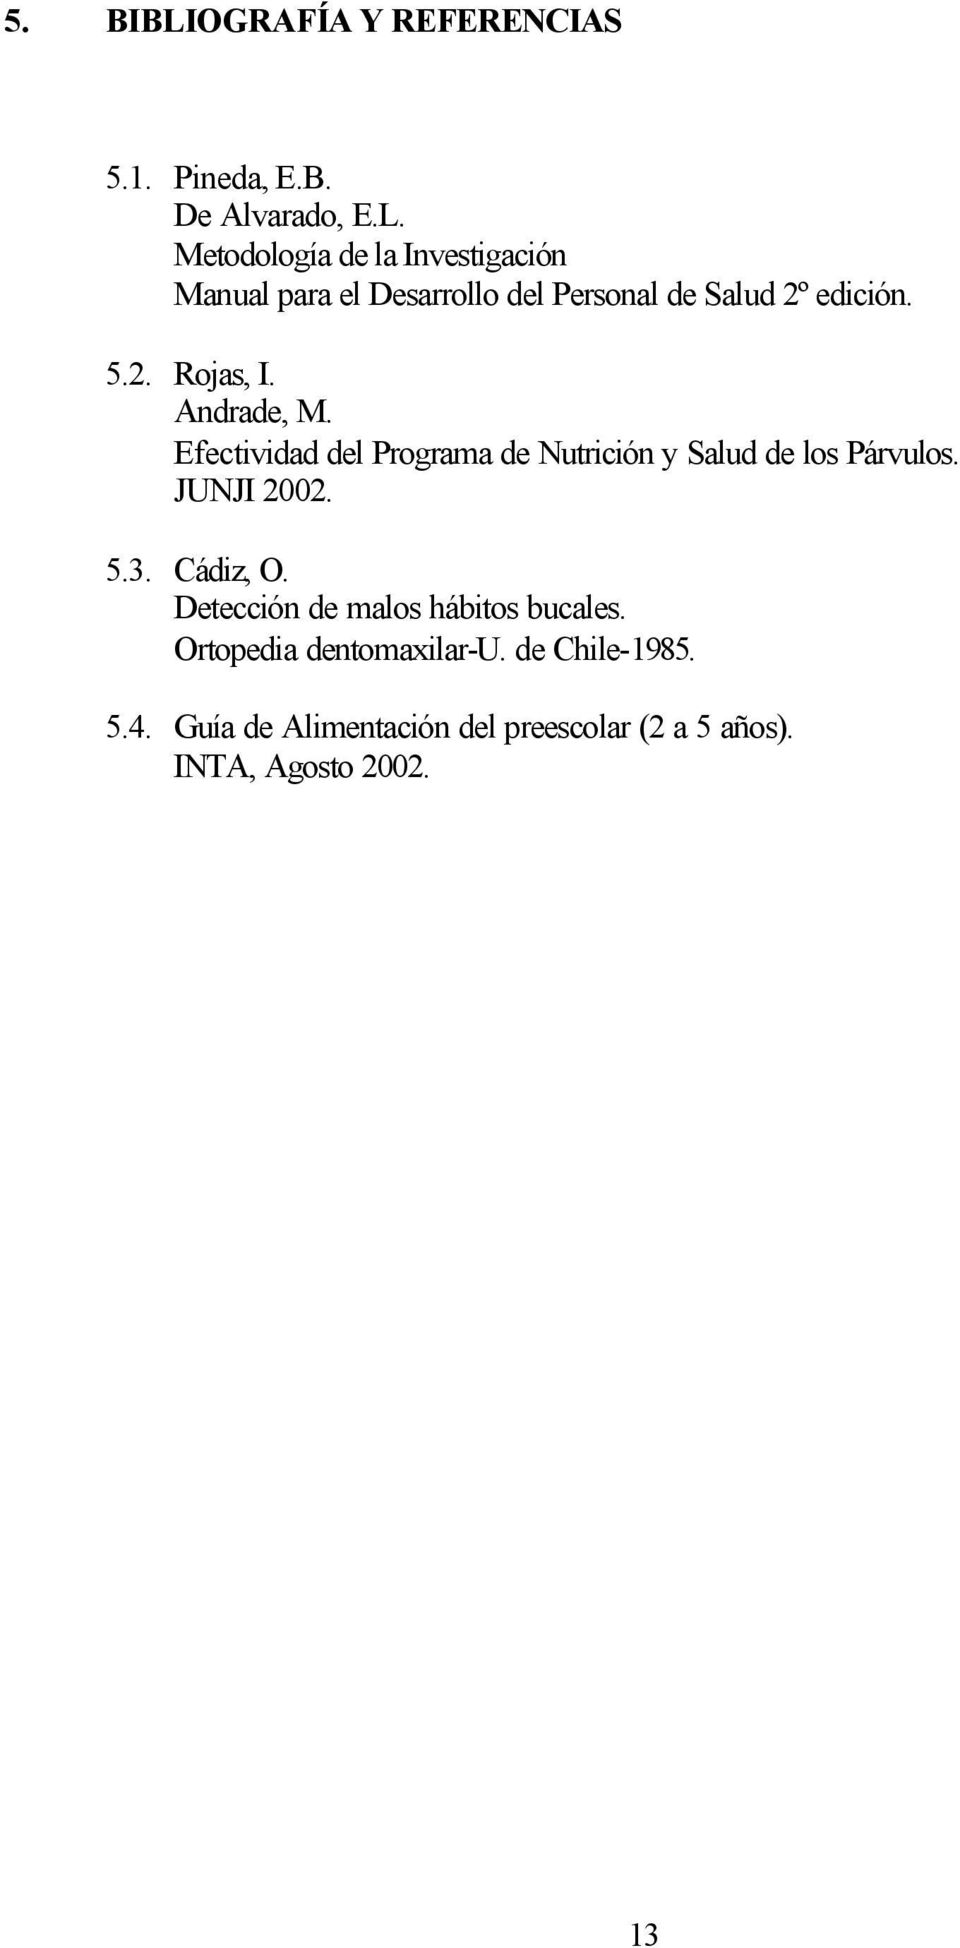 Cádiz, O. Detección de malos hábitos bucales. Ortopedia dentomaxilar-u. de Chile-1985. 5.4.